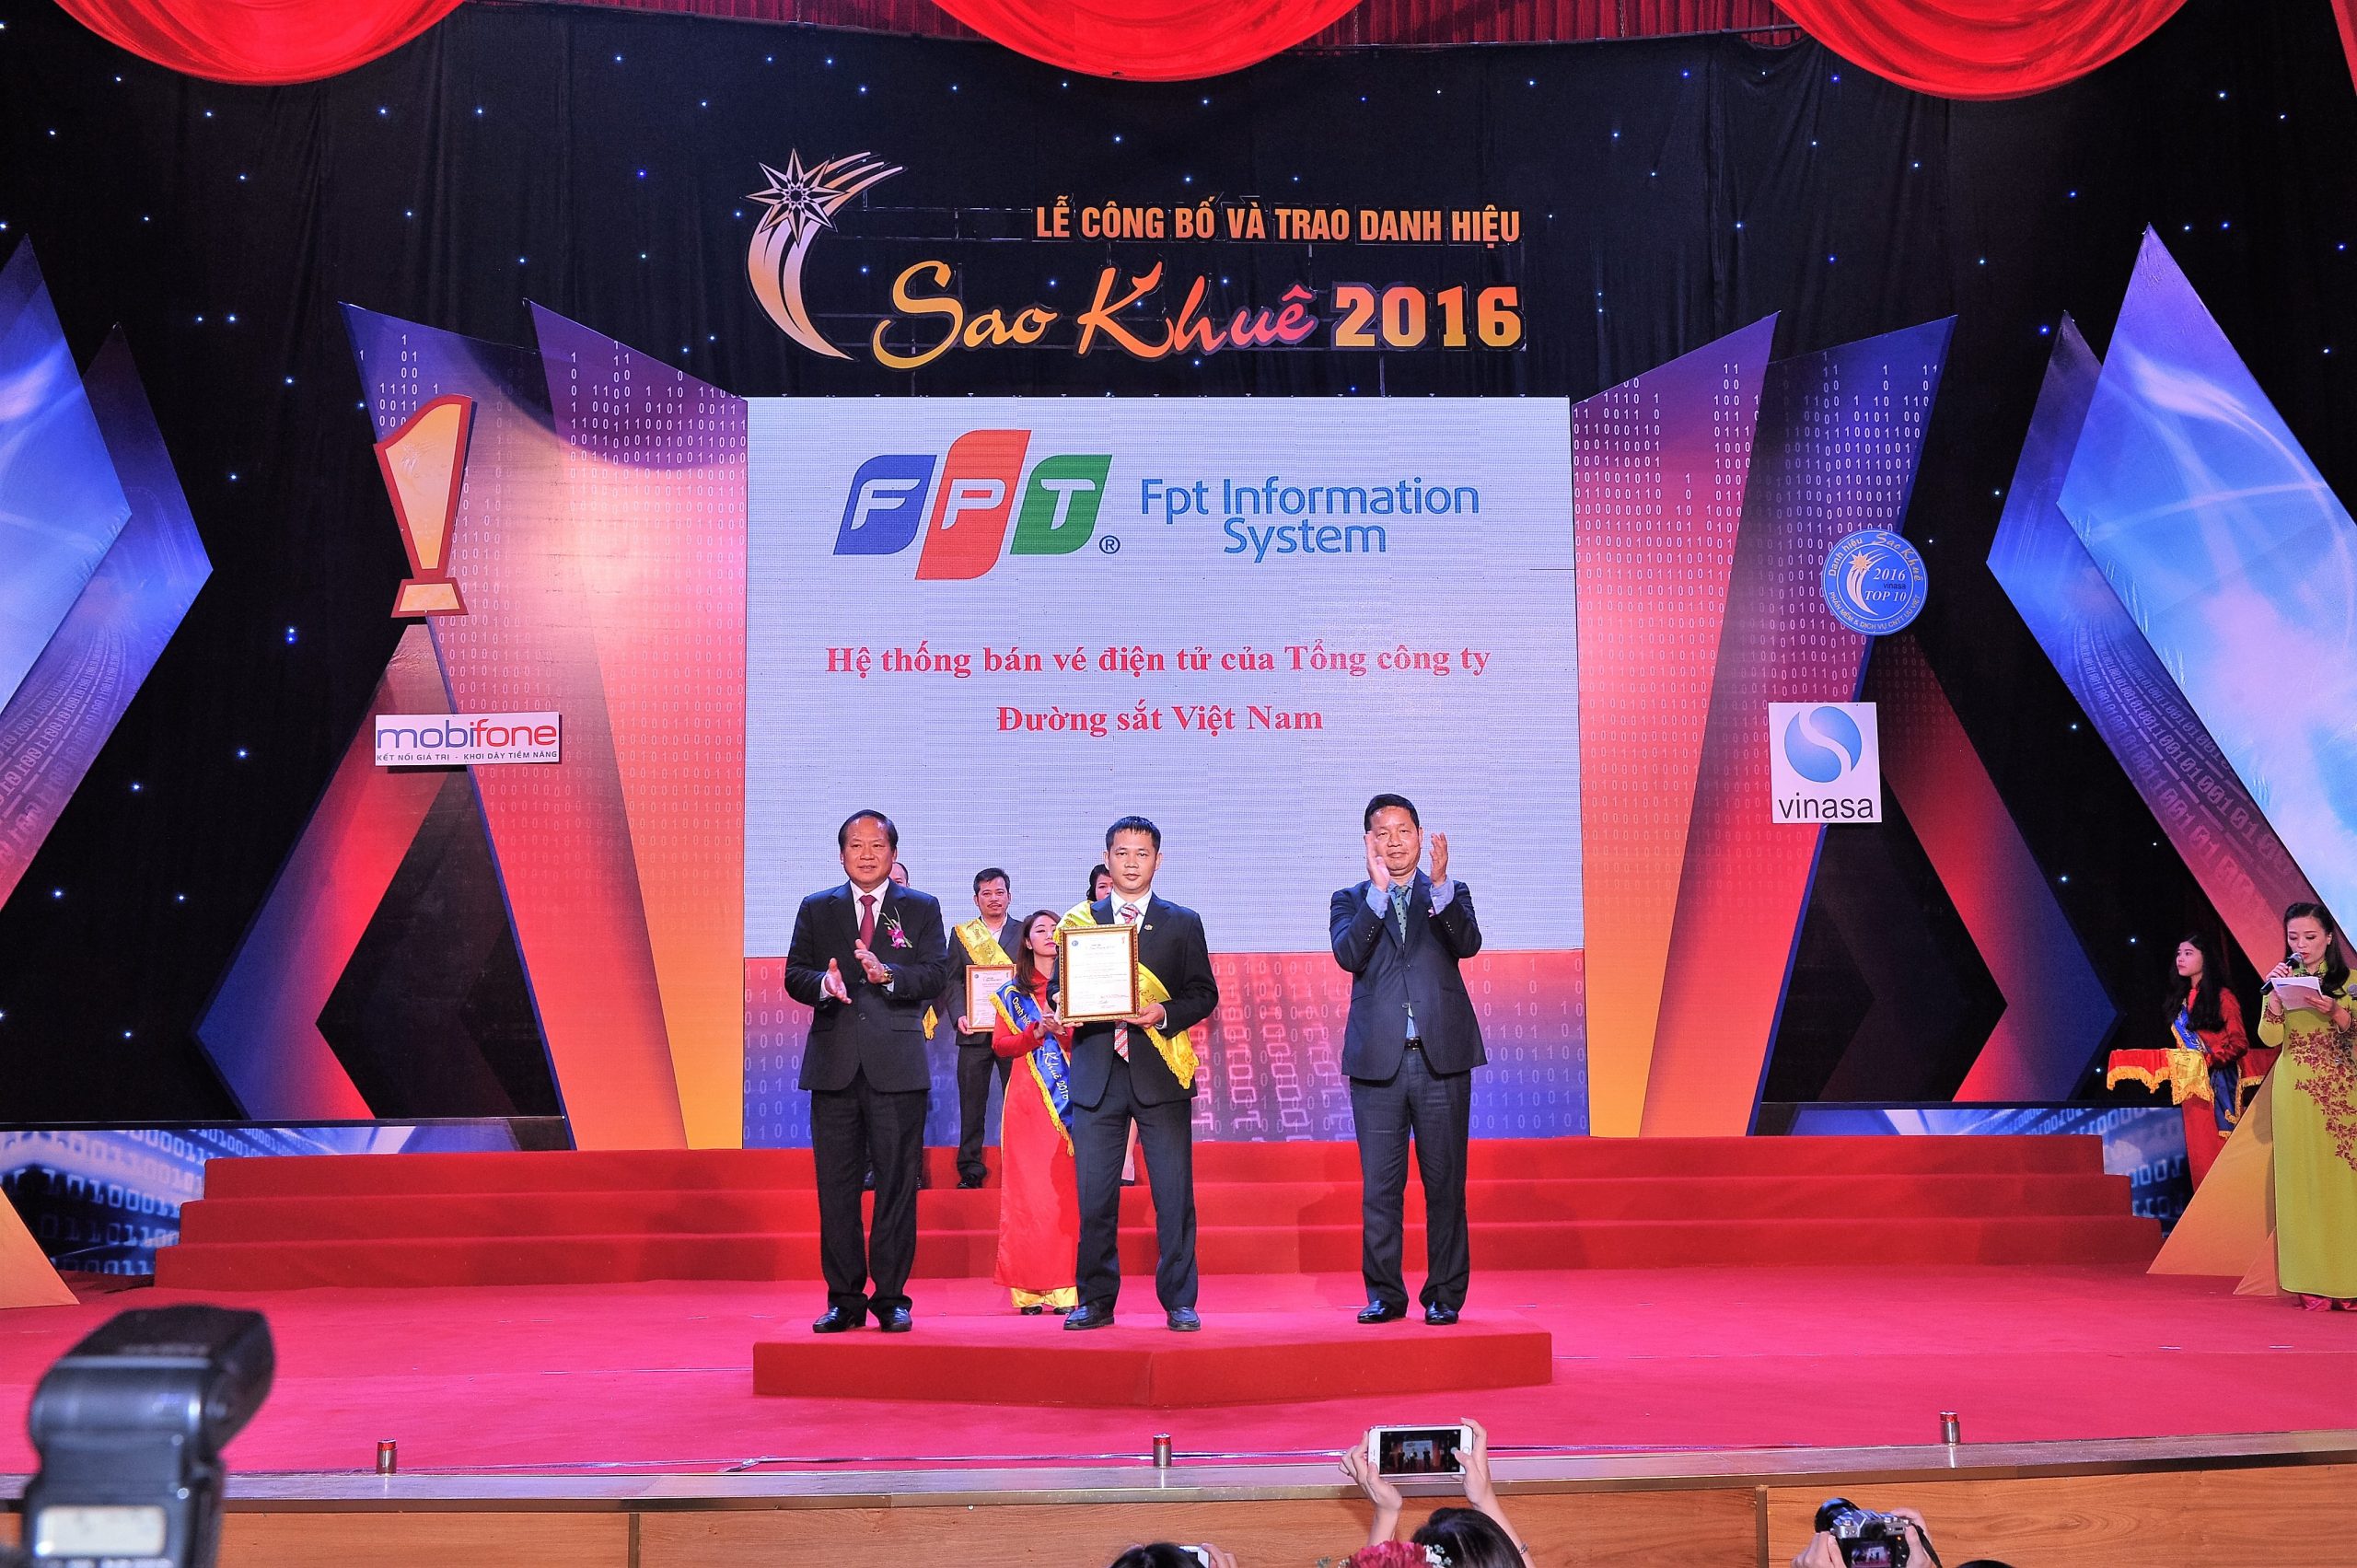 Hệ thống bán vé điện tử triển khai cho Tổng công ty Đường sắt Việt Nam đạt Danh hiệu Sao Khuê 2016 (Top 10 Sao Khuê 2016)